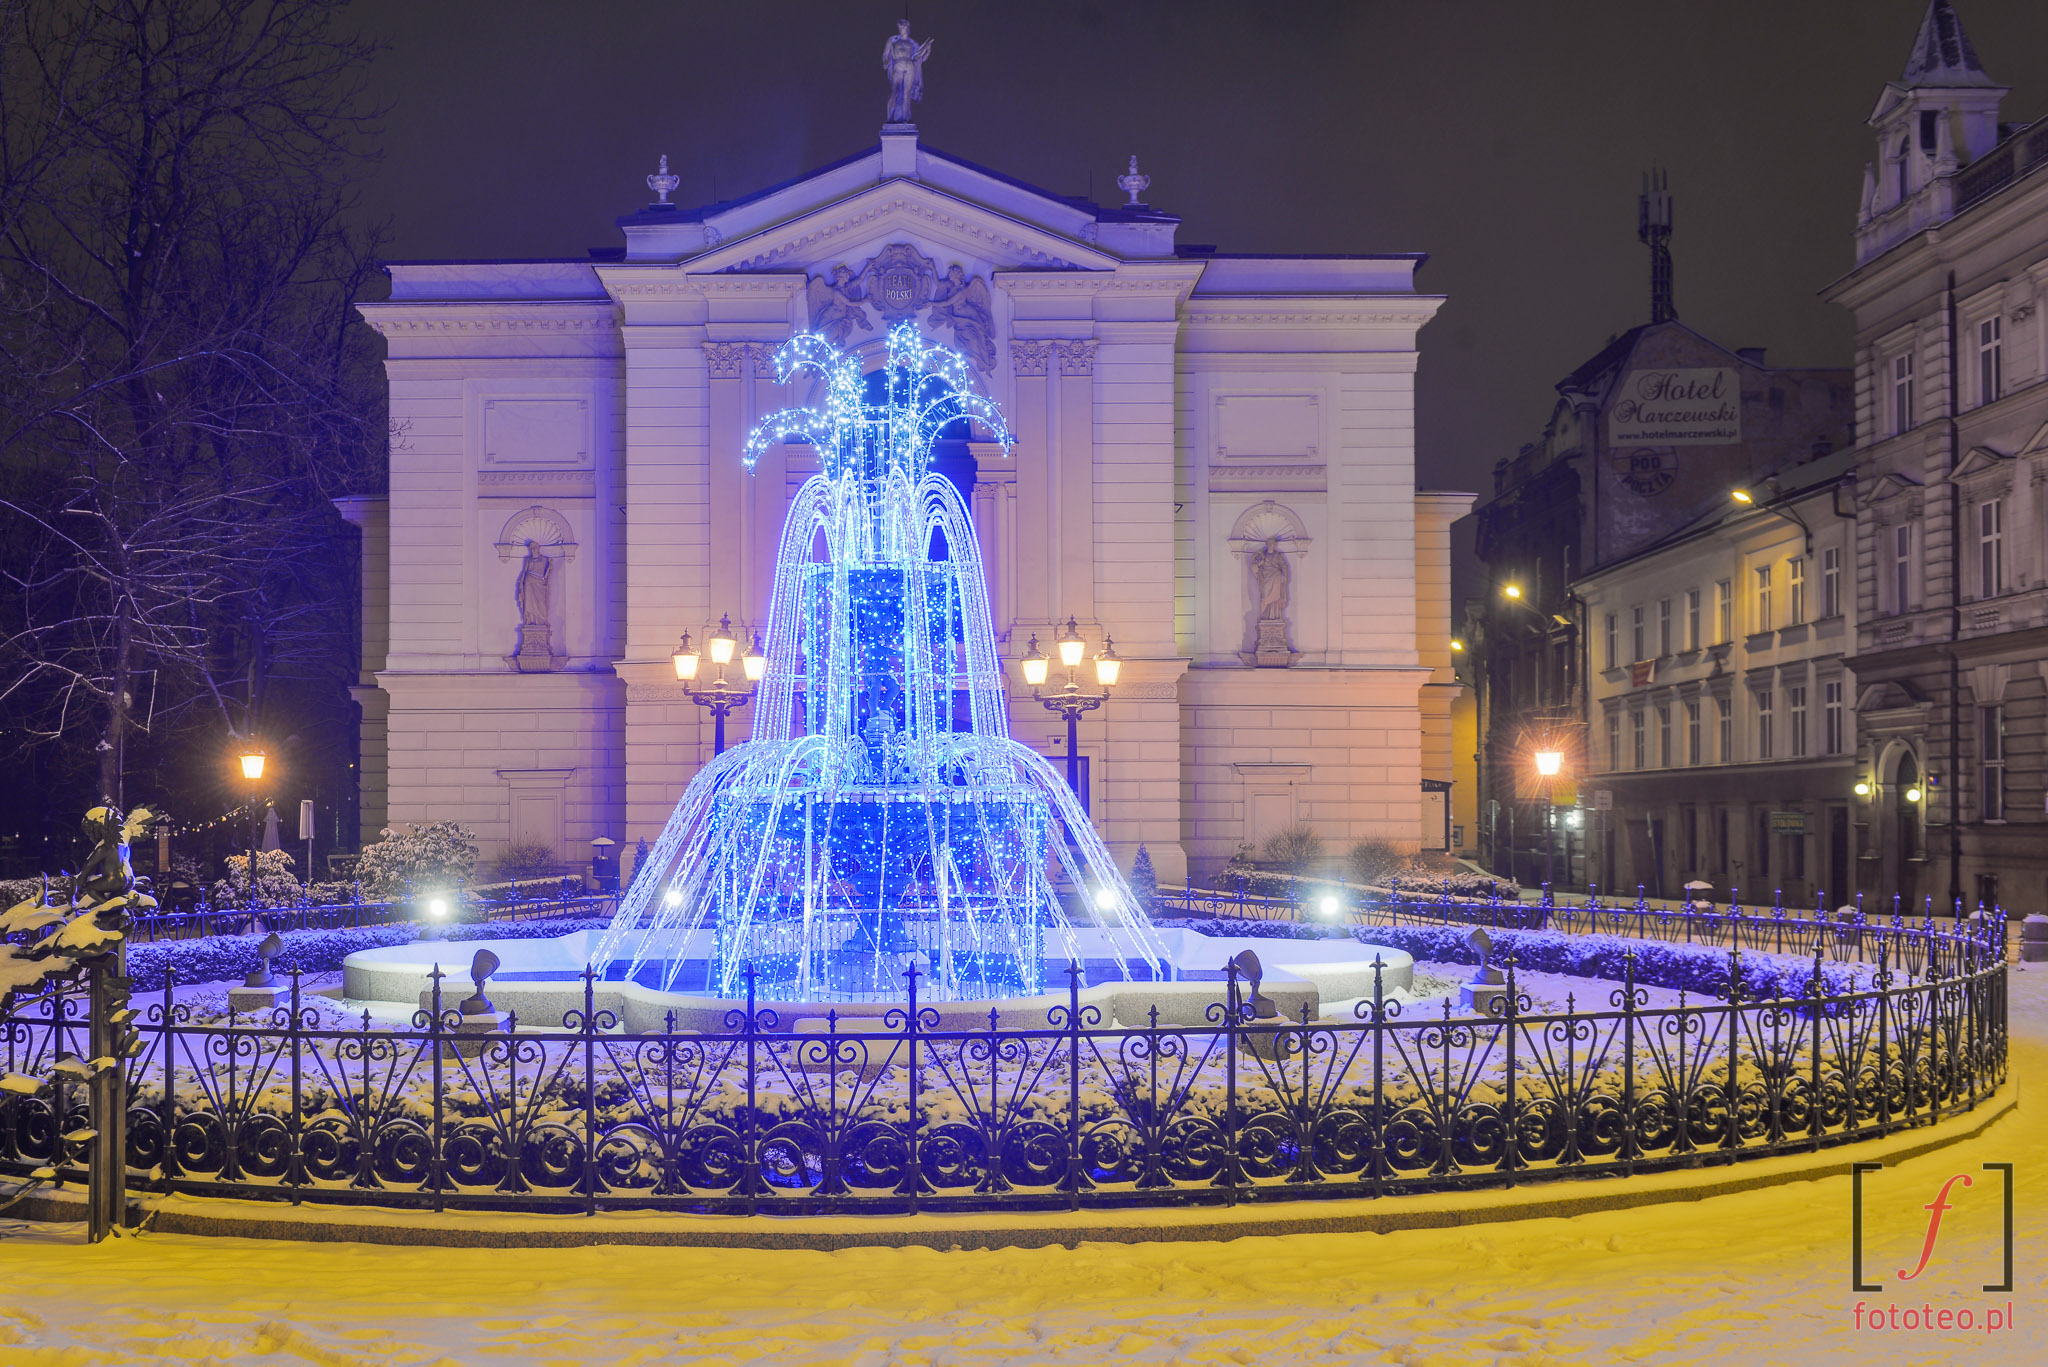 Teatr Polski i fontanna w Bielsku-Białej